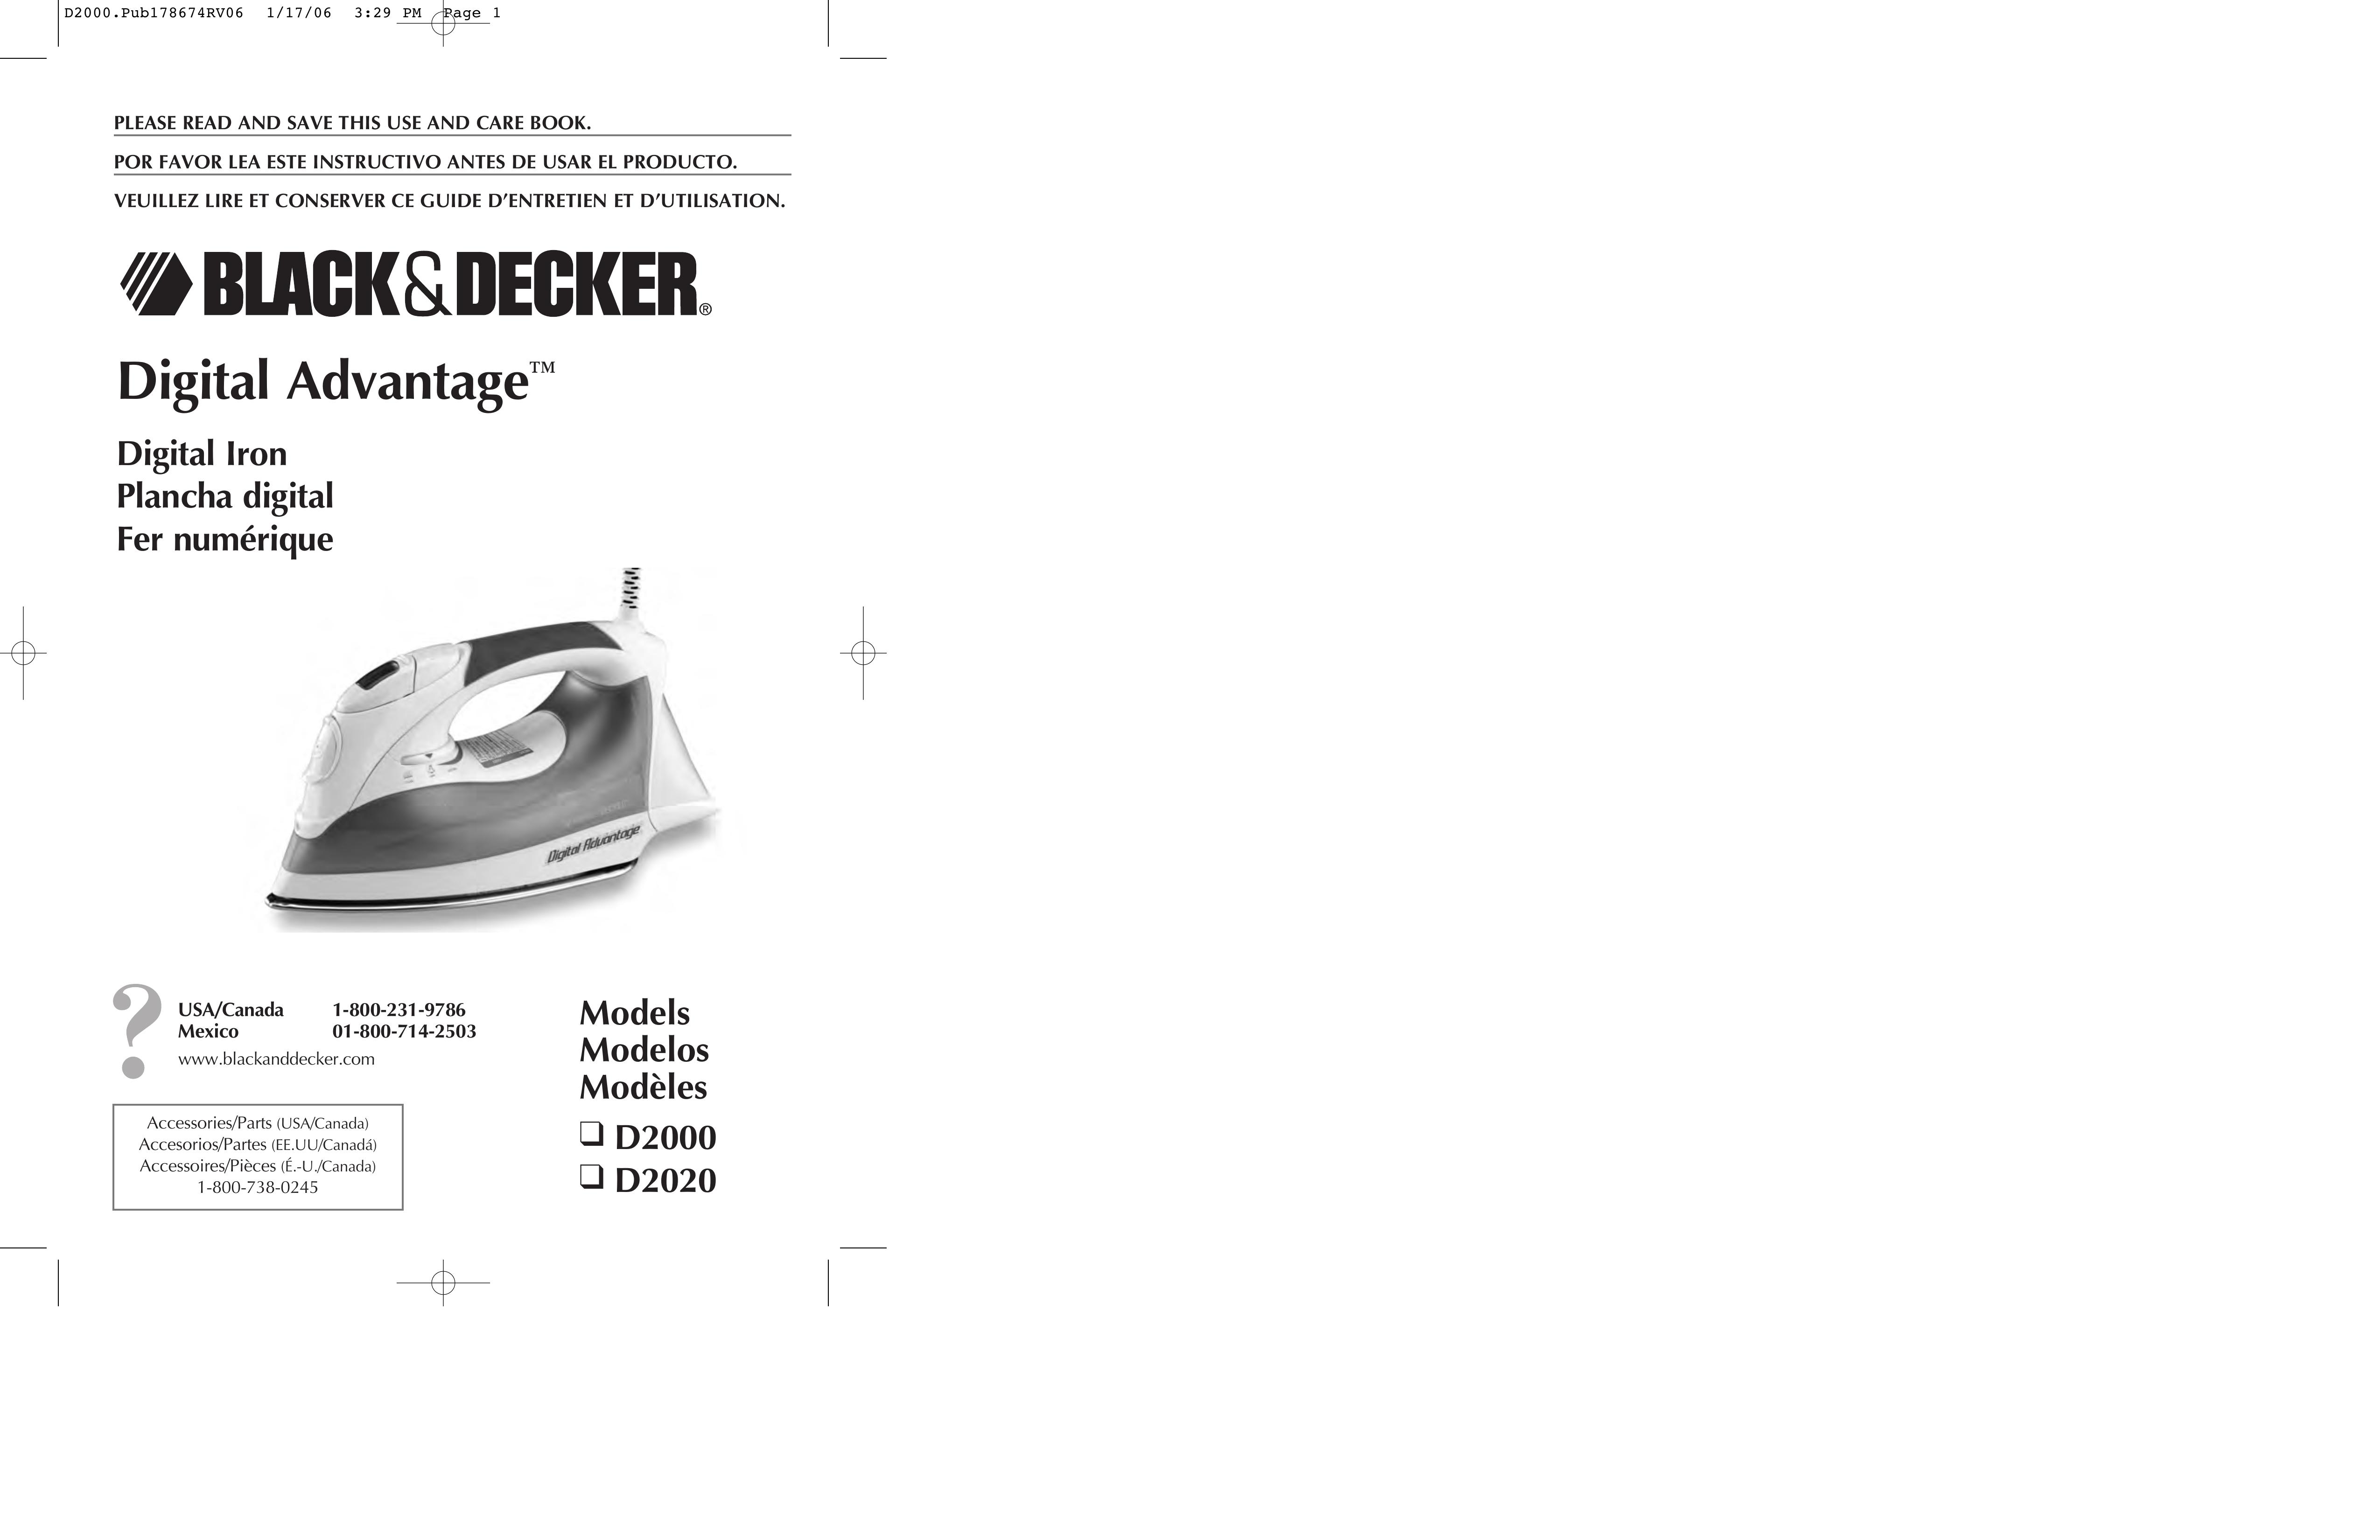 Black & Decker D2020 Iron User Manual